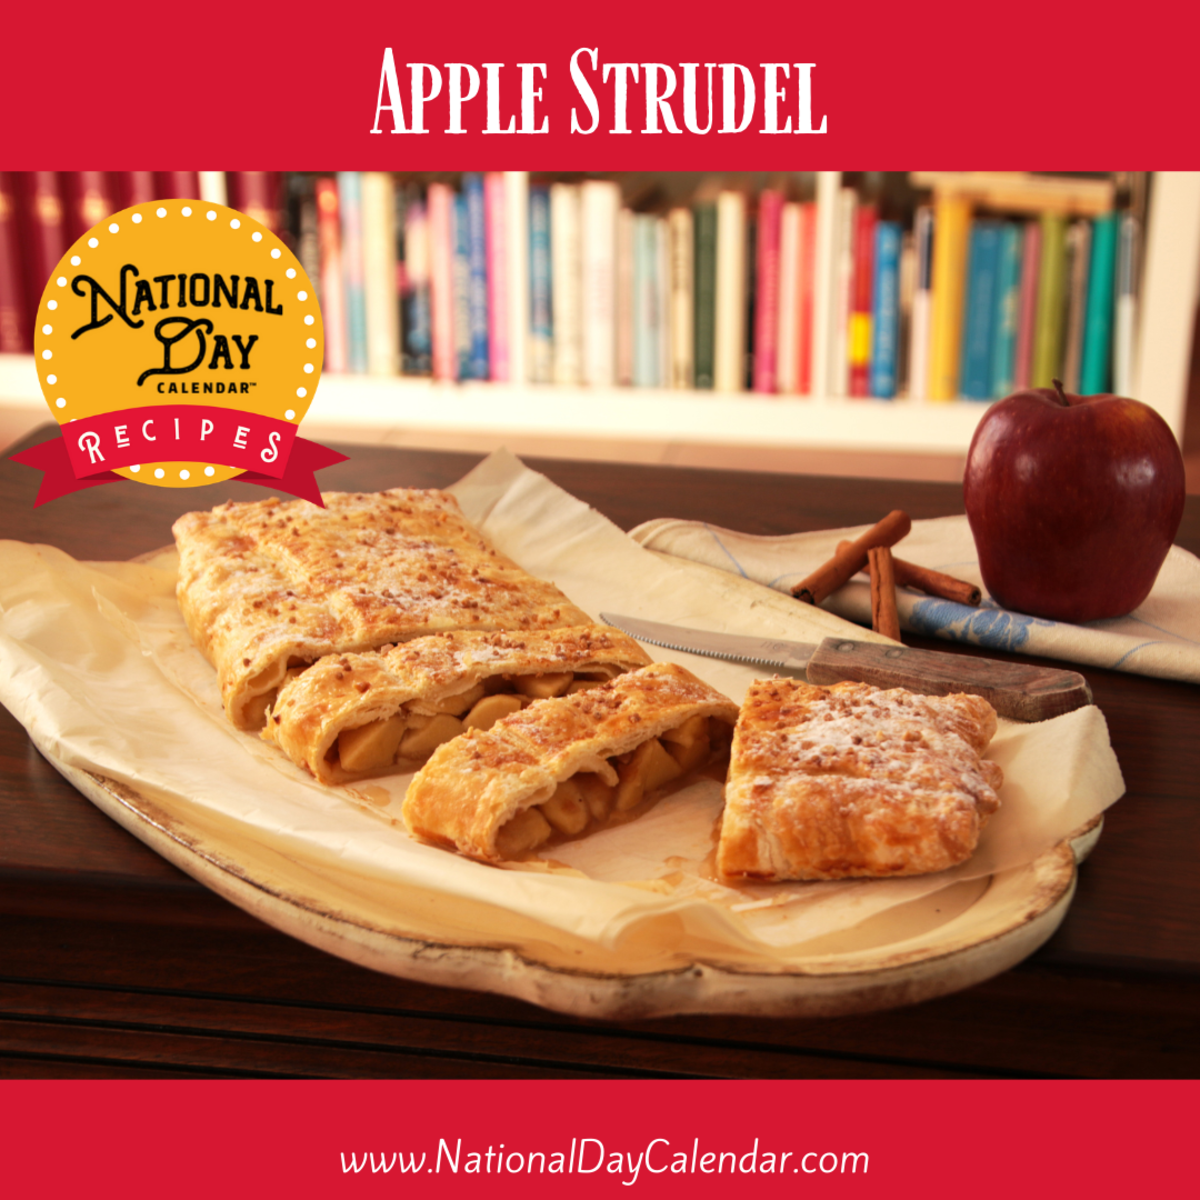 Apple Strudel recipe